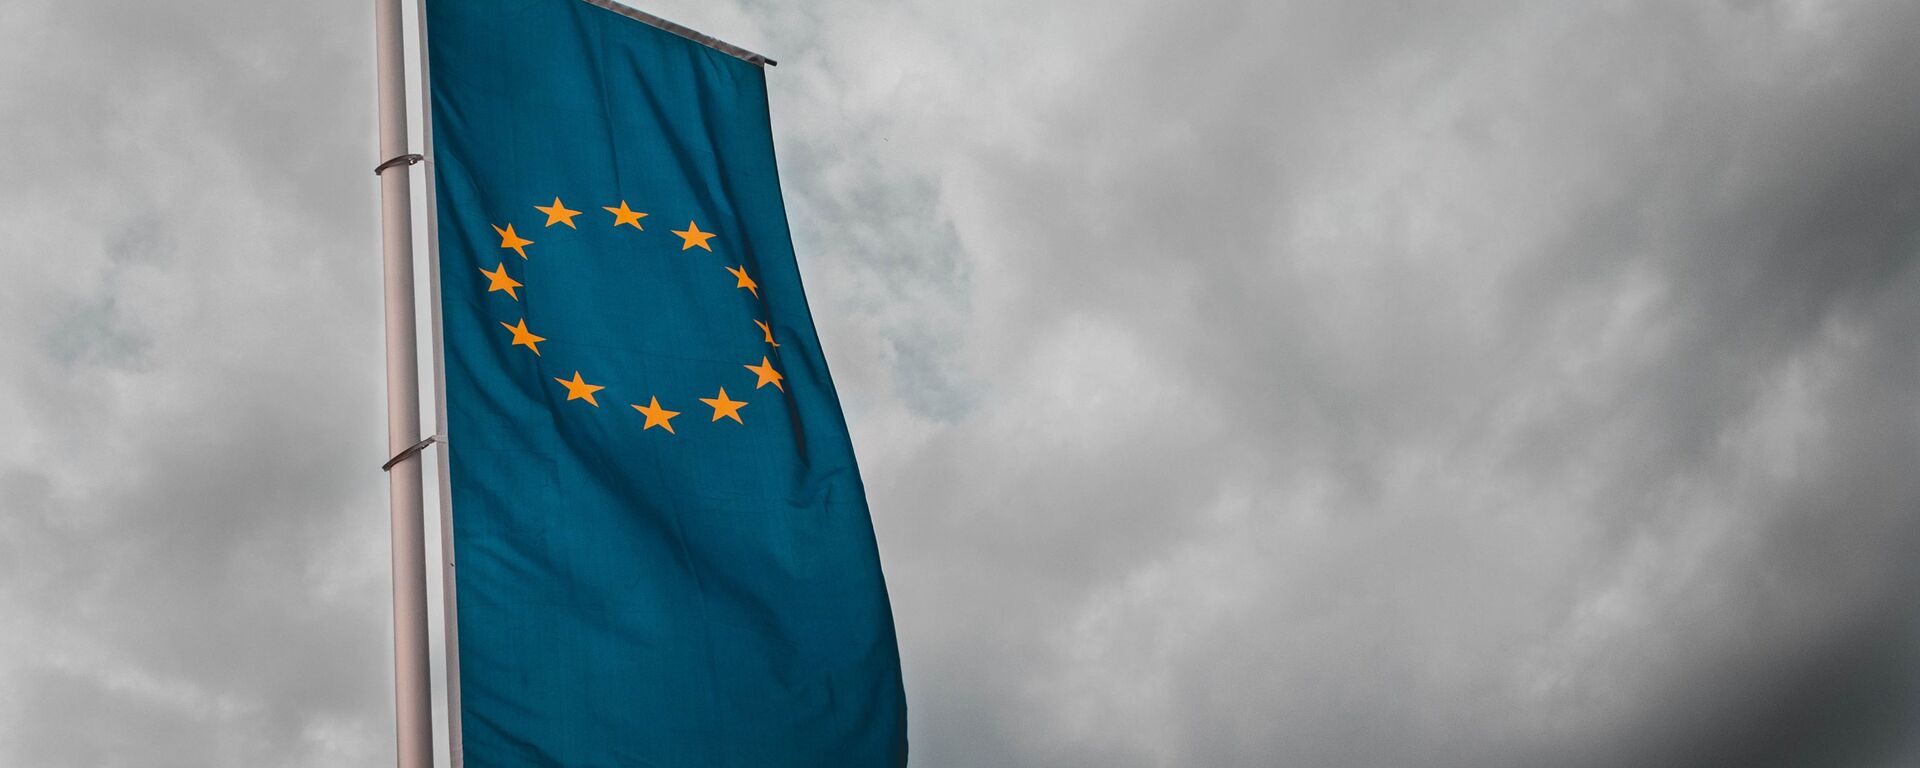 Bandera de la Unión Europea - Sputnik Mundo, 1920, 28.04.2021